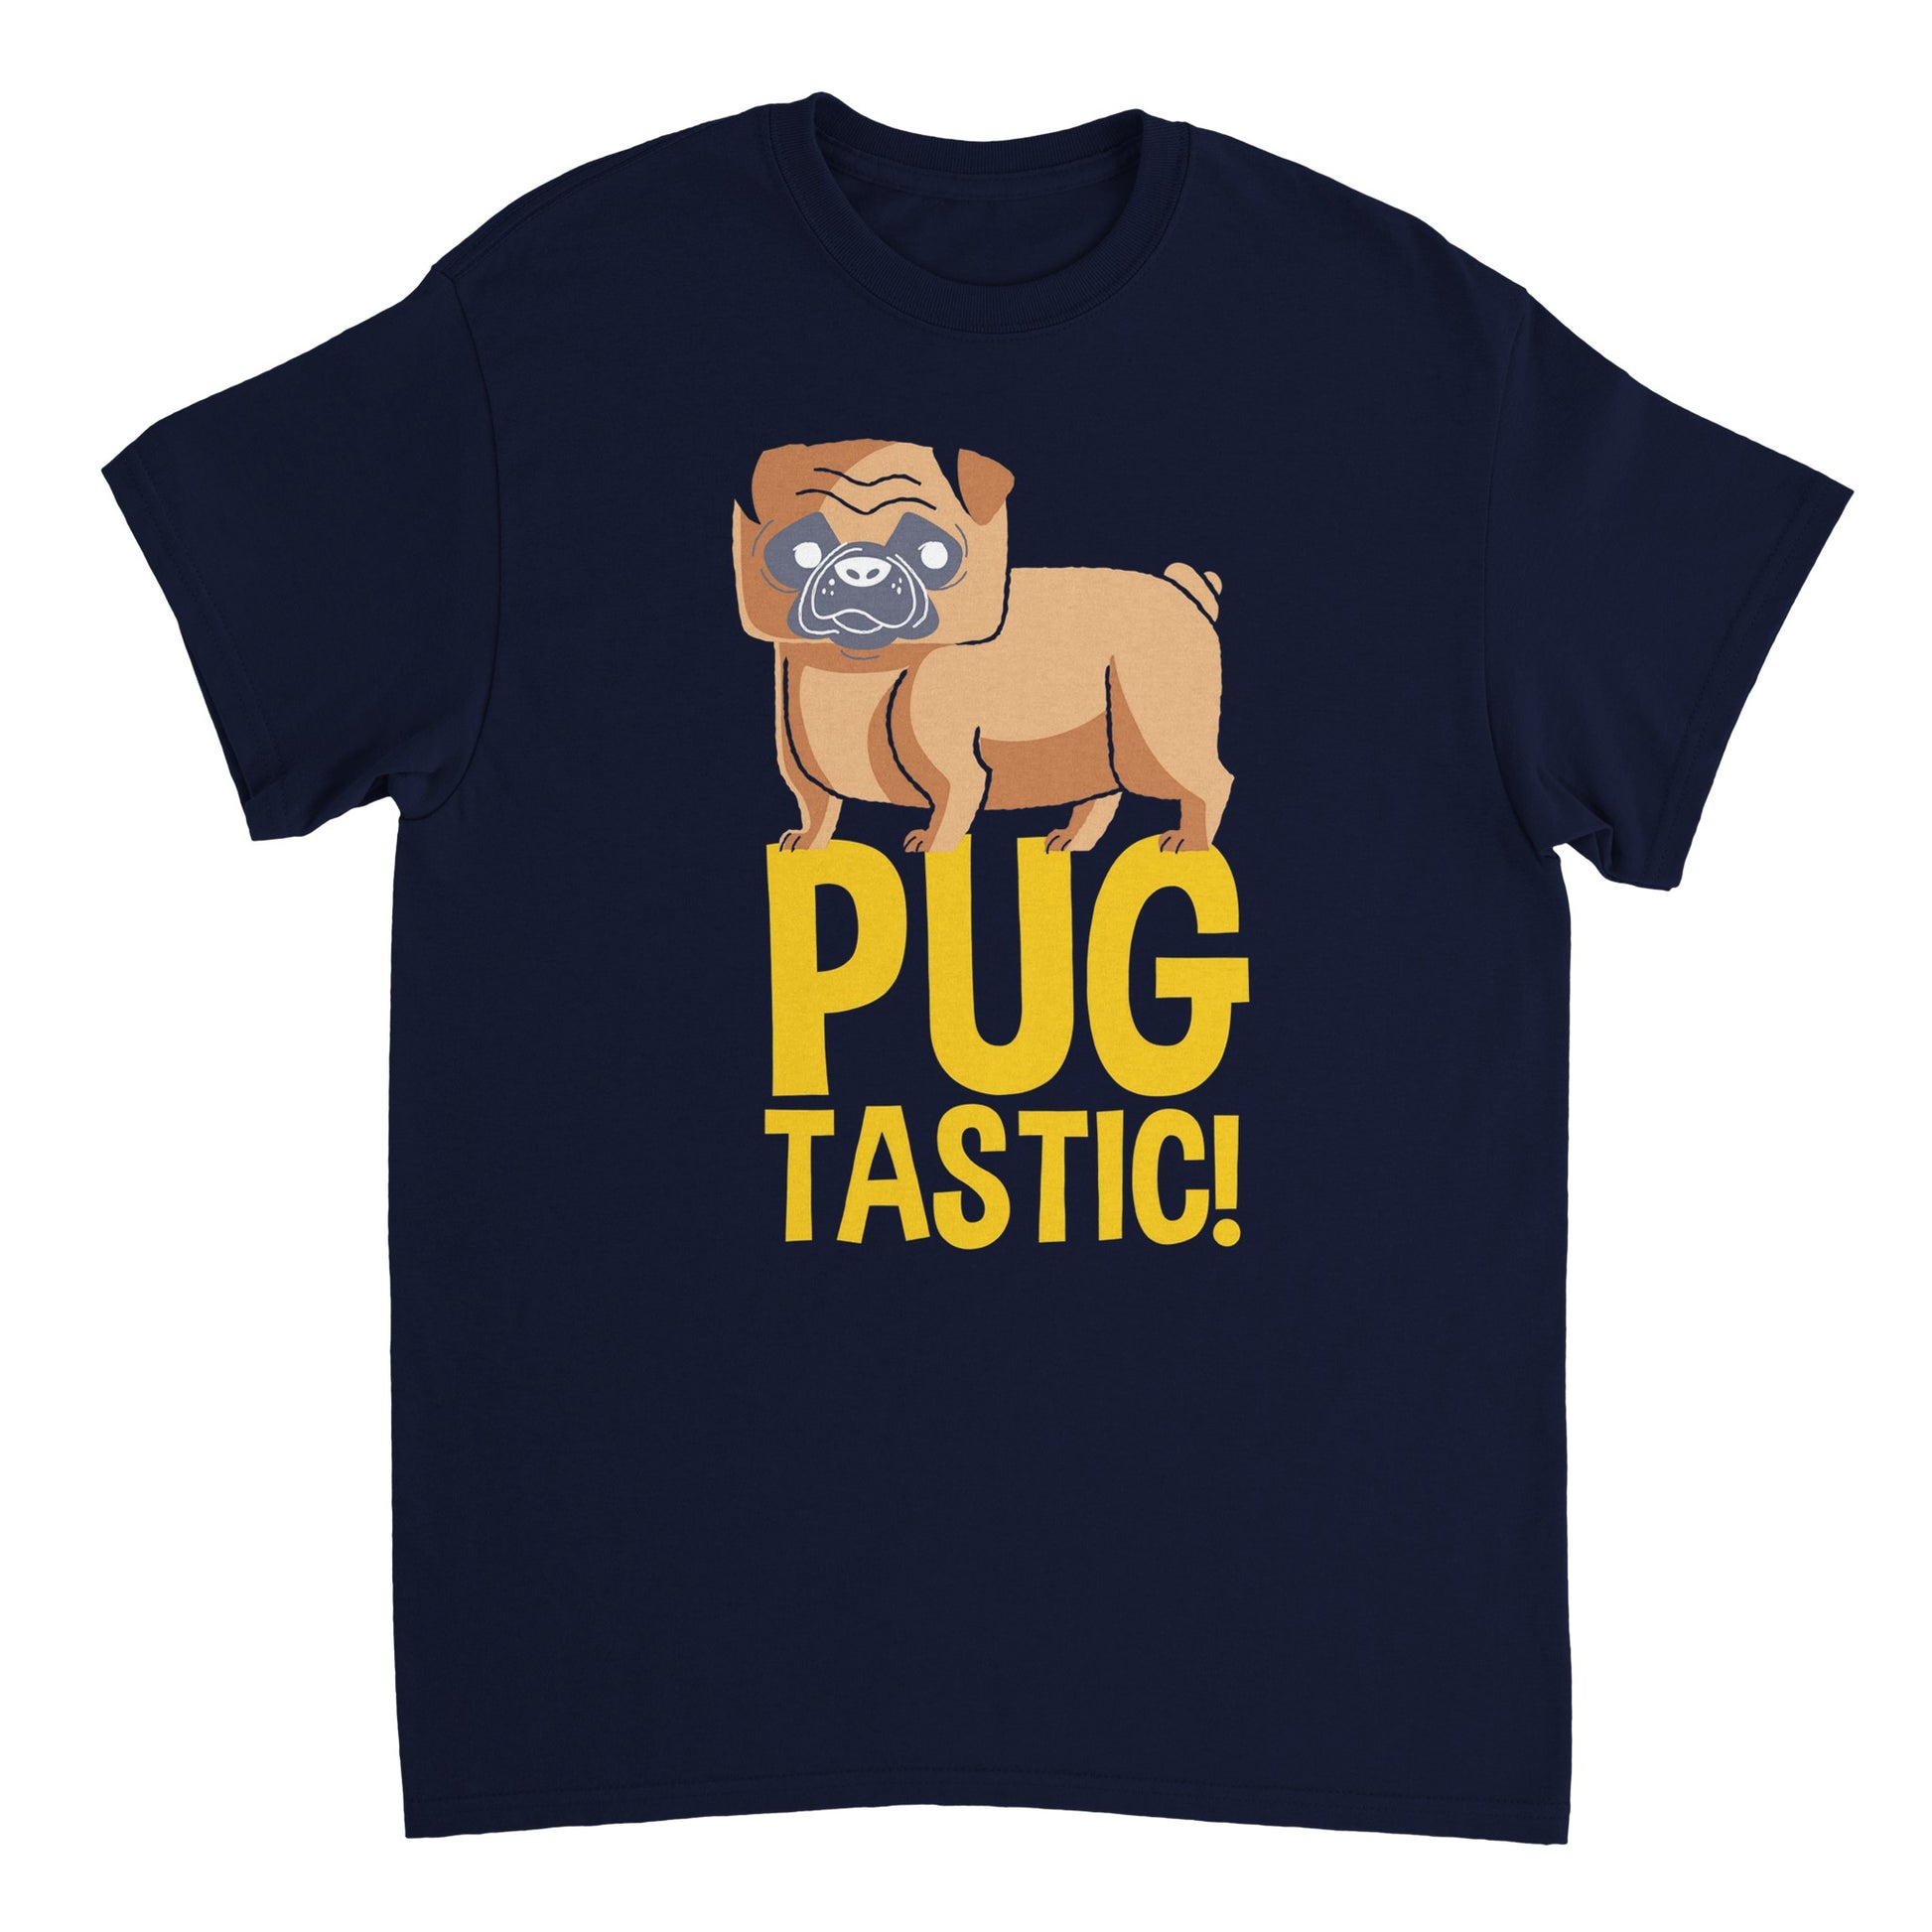 Pugtastic! T-shirt - Mister Snarky's